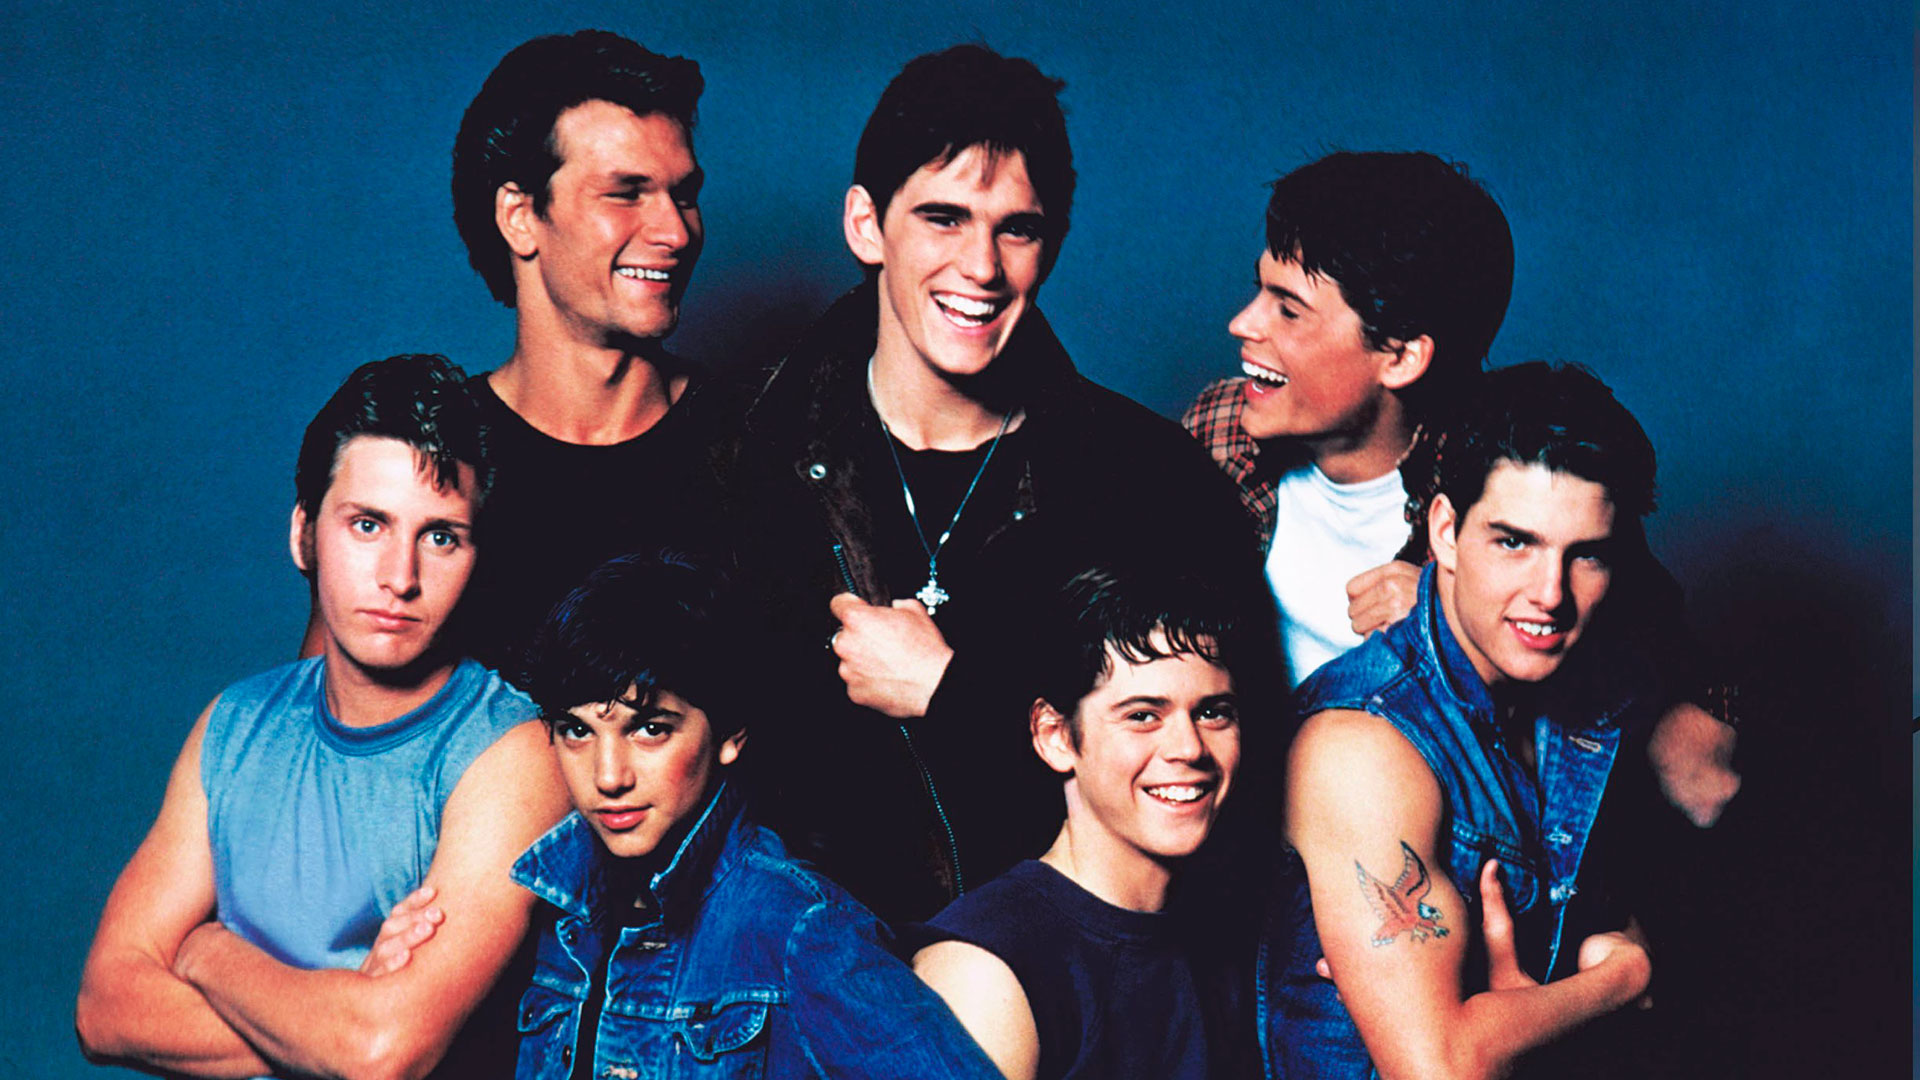 Tom Cruise, Matt Dillon, Emilio Estévez y Rob Lowe se convirtieron en ídolos y modelos de una generación. Cientos de adolescentes se enamoraban de ellos en "Los marginados" de Francis Ford Coppola 
(The Grosby Group)